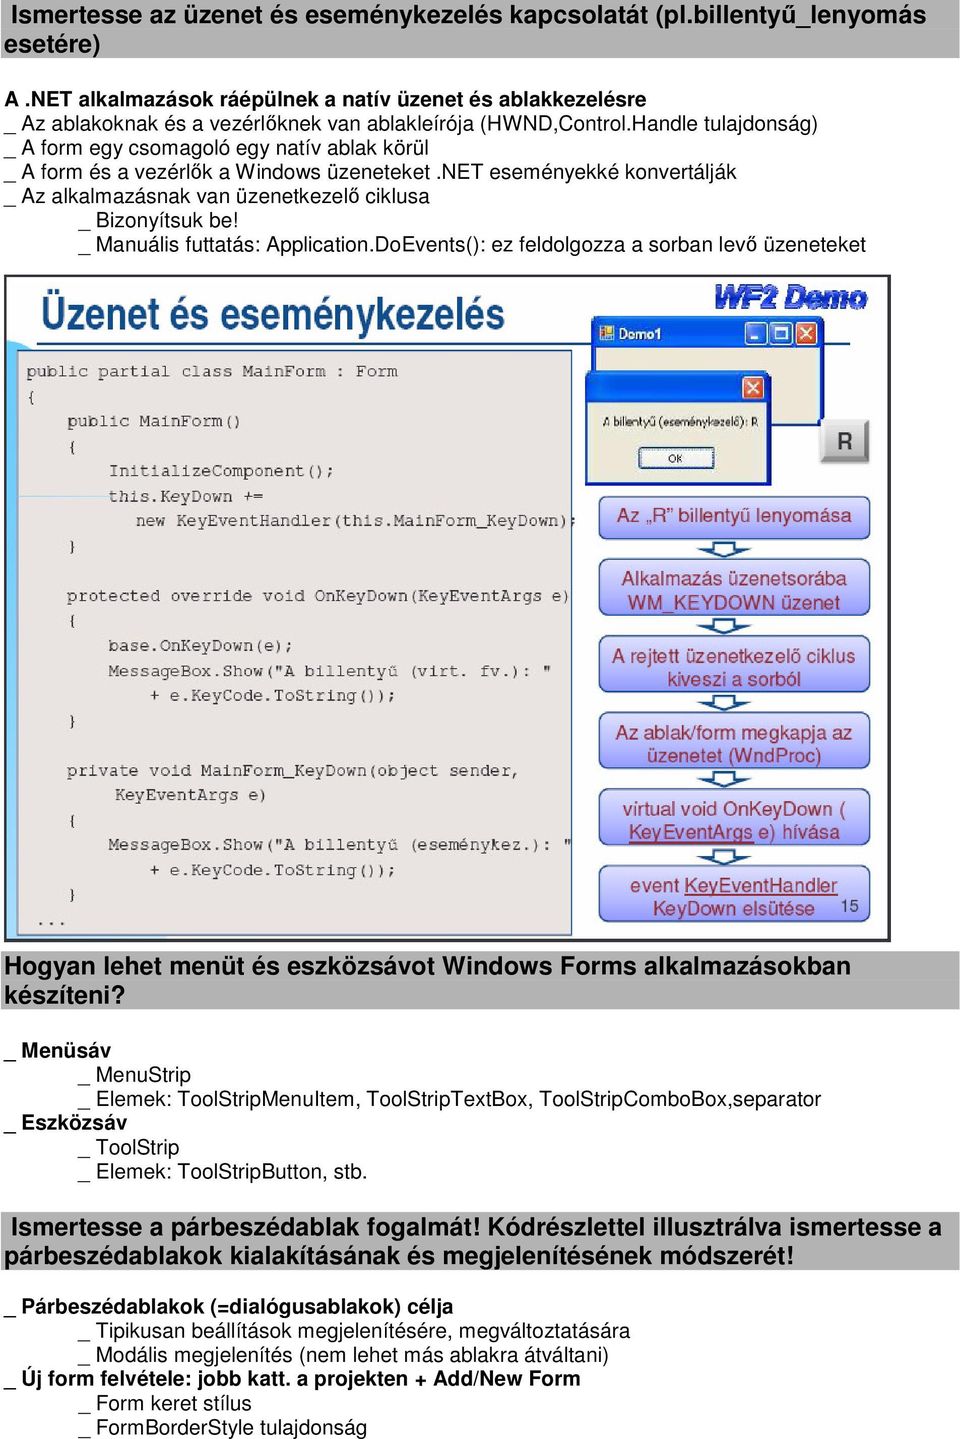 Handle tulajdonság) _ A form egy csomagoló egy natív ablak körül _ A form és a vezérlők a Windows üzeneteket.net eseményekké konvertálják _ Az alkalmazásnak van üzenetkezelő ciklusa _ Bizonyítsuk be!